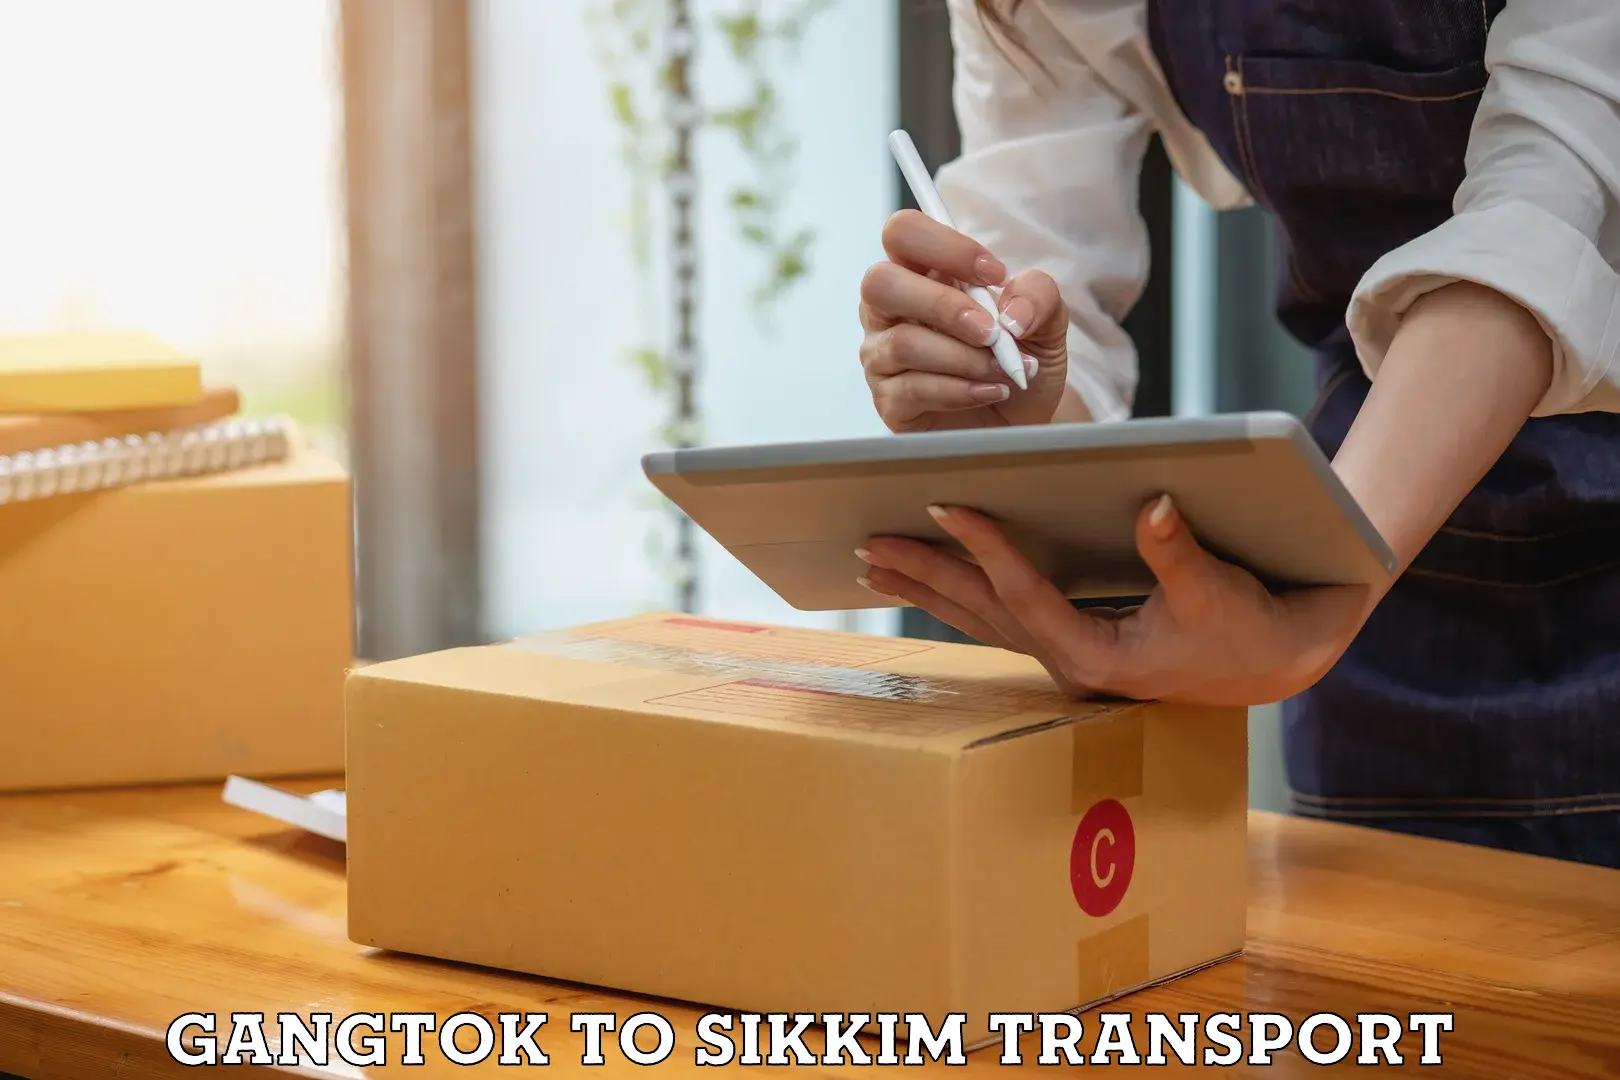 Shipping partner Gangtok to East Sikkim